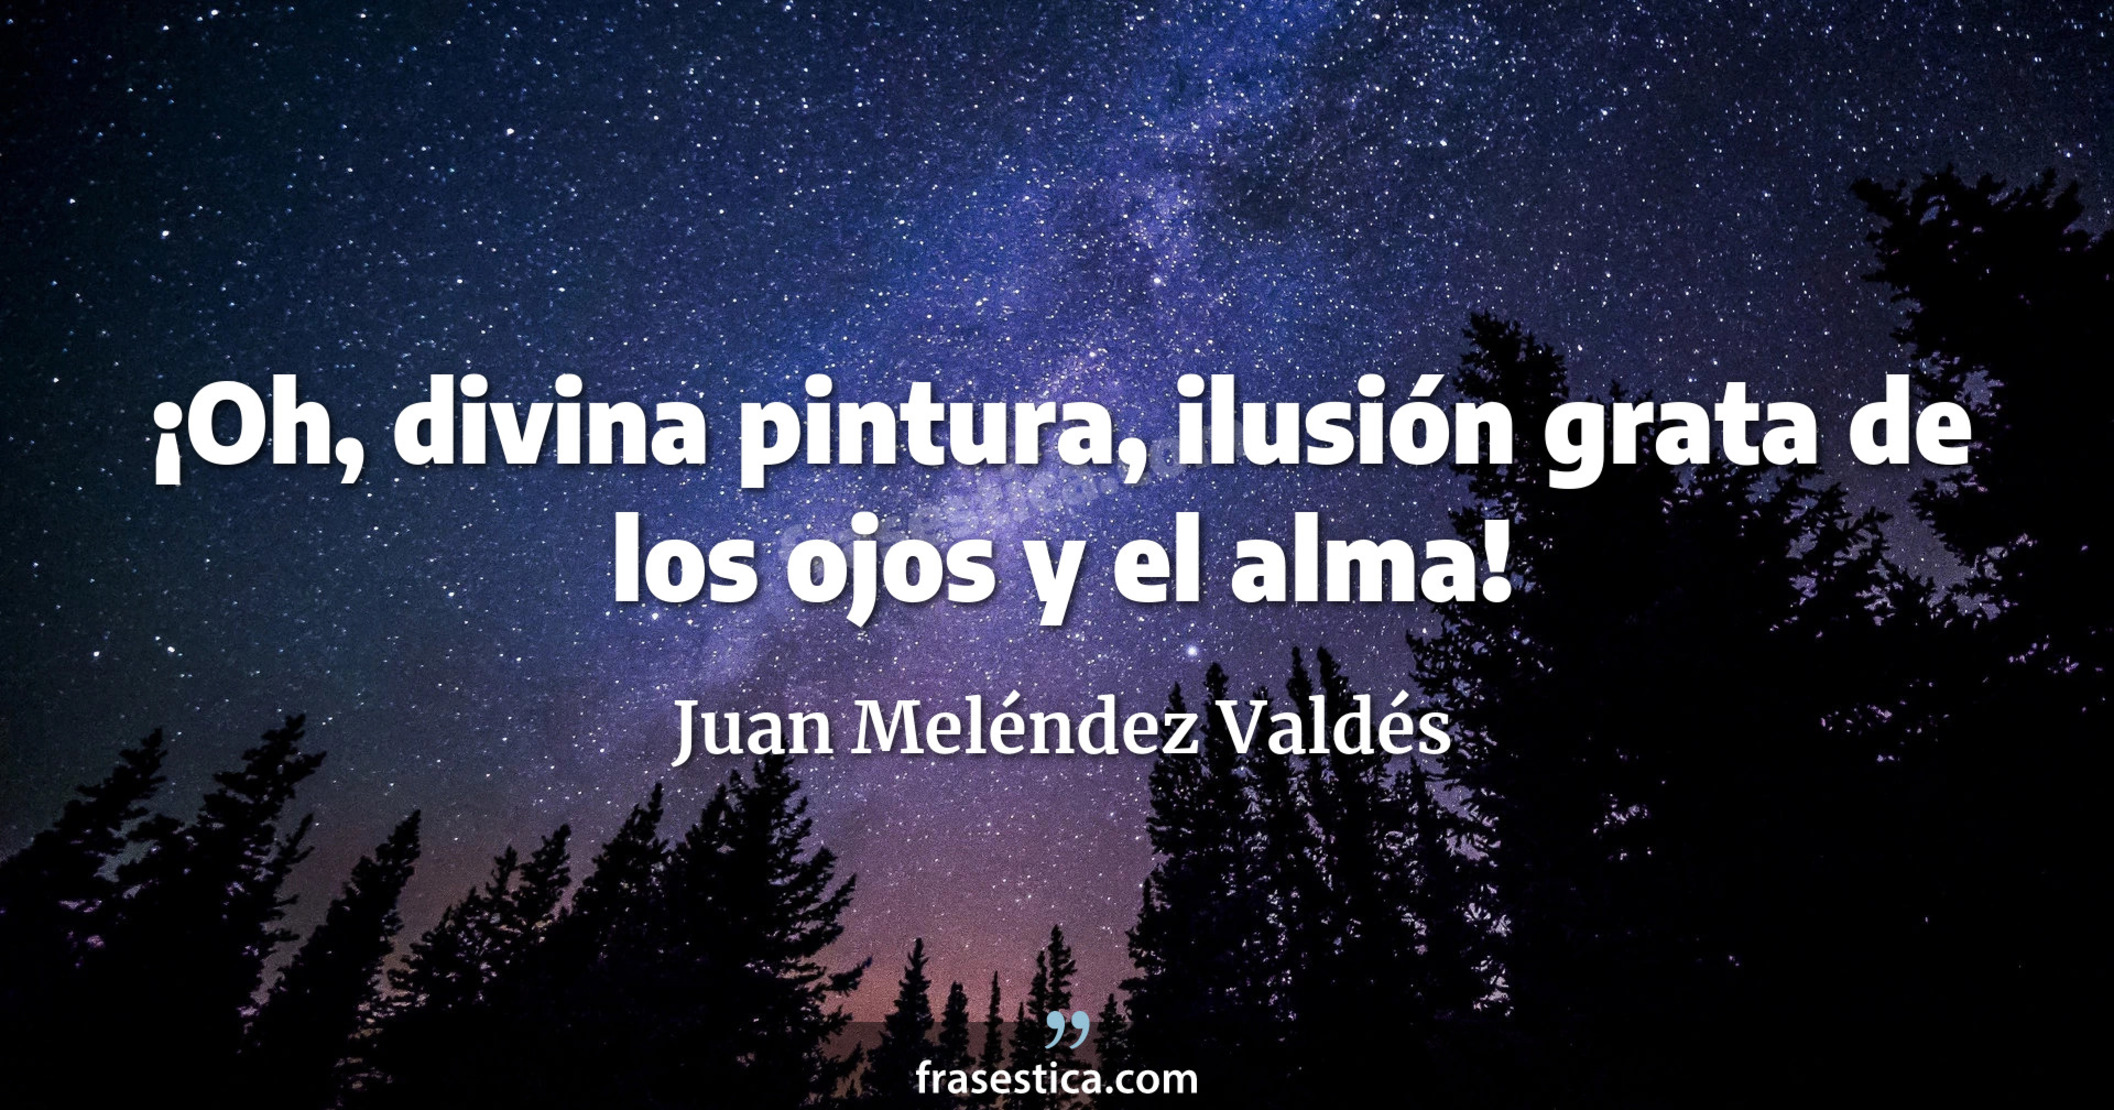 ¡Oh, divina pintura, ilusión grata de los ojos y el alma! - Juan Meléndez Valdés